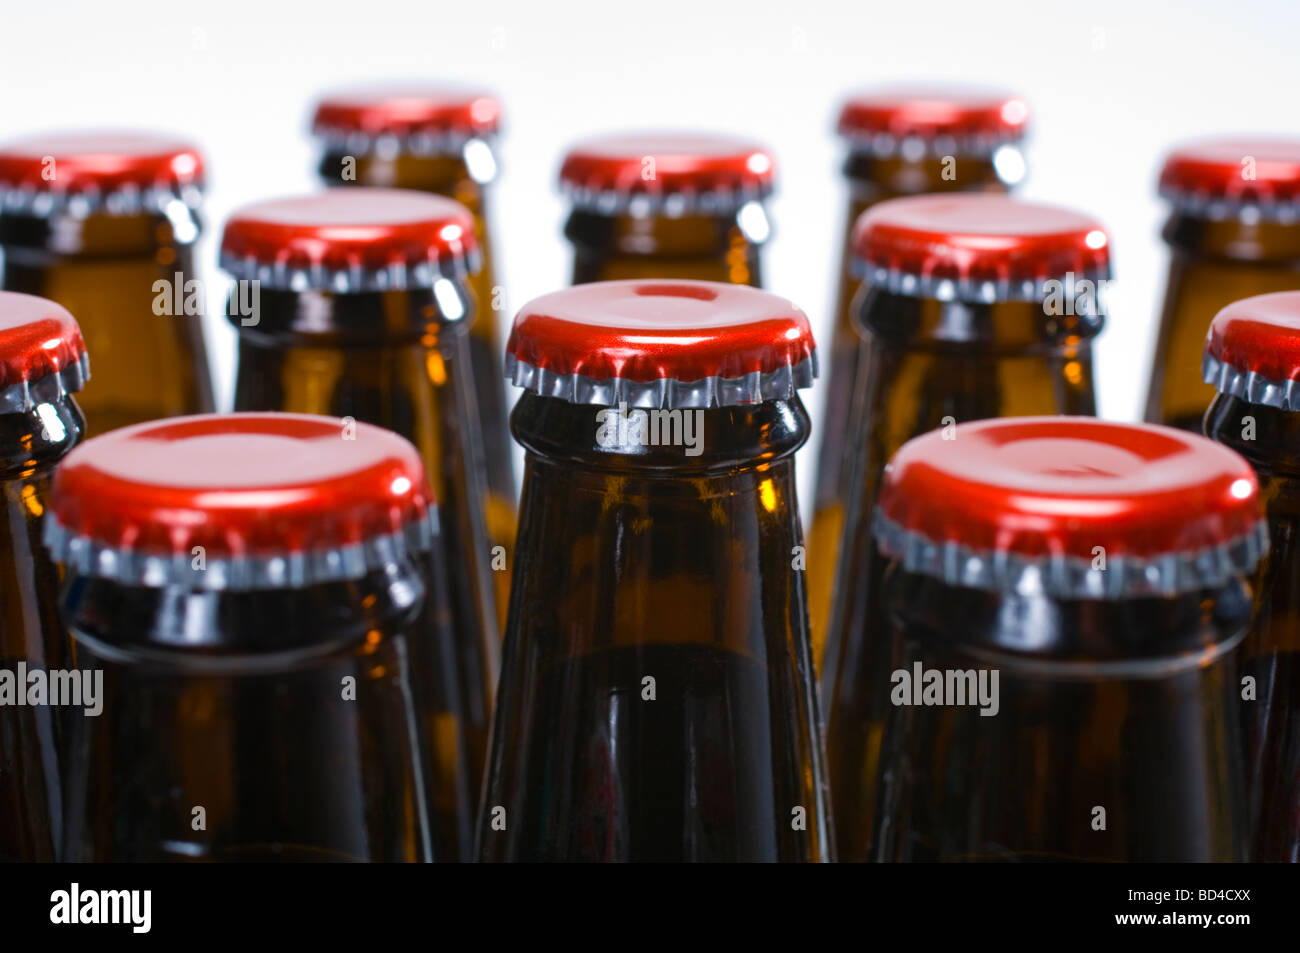 Bierflaschen mit roten Kappen - Wahlheimat Bier abgefüllt und zum Verzehr bereit Stockfoto